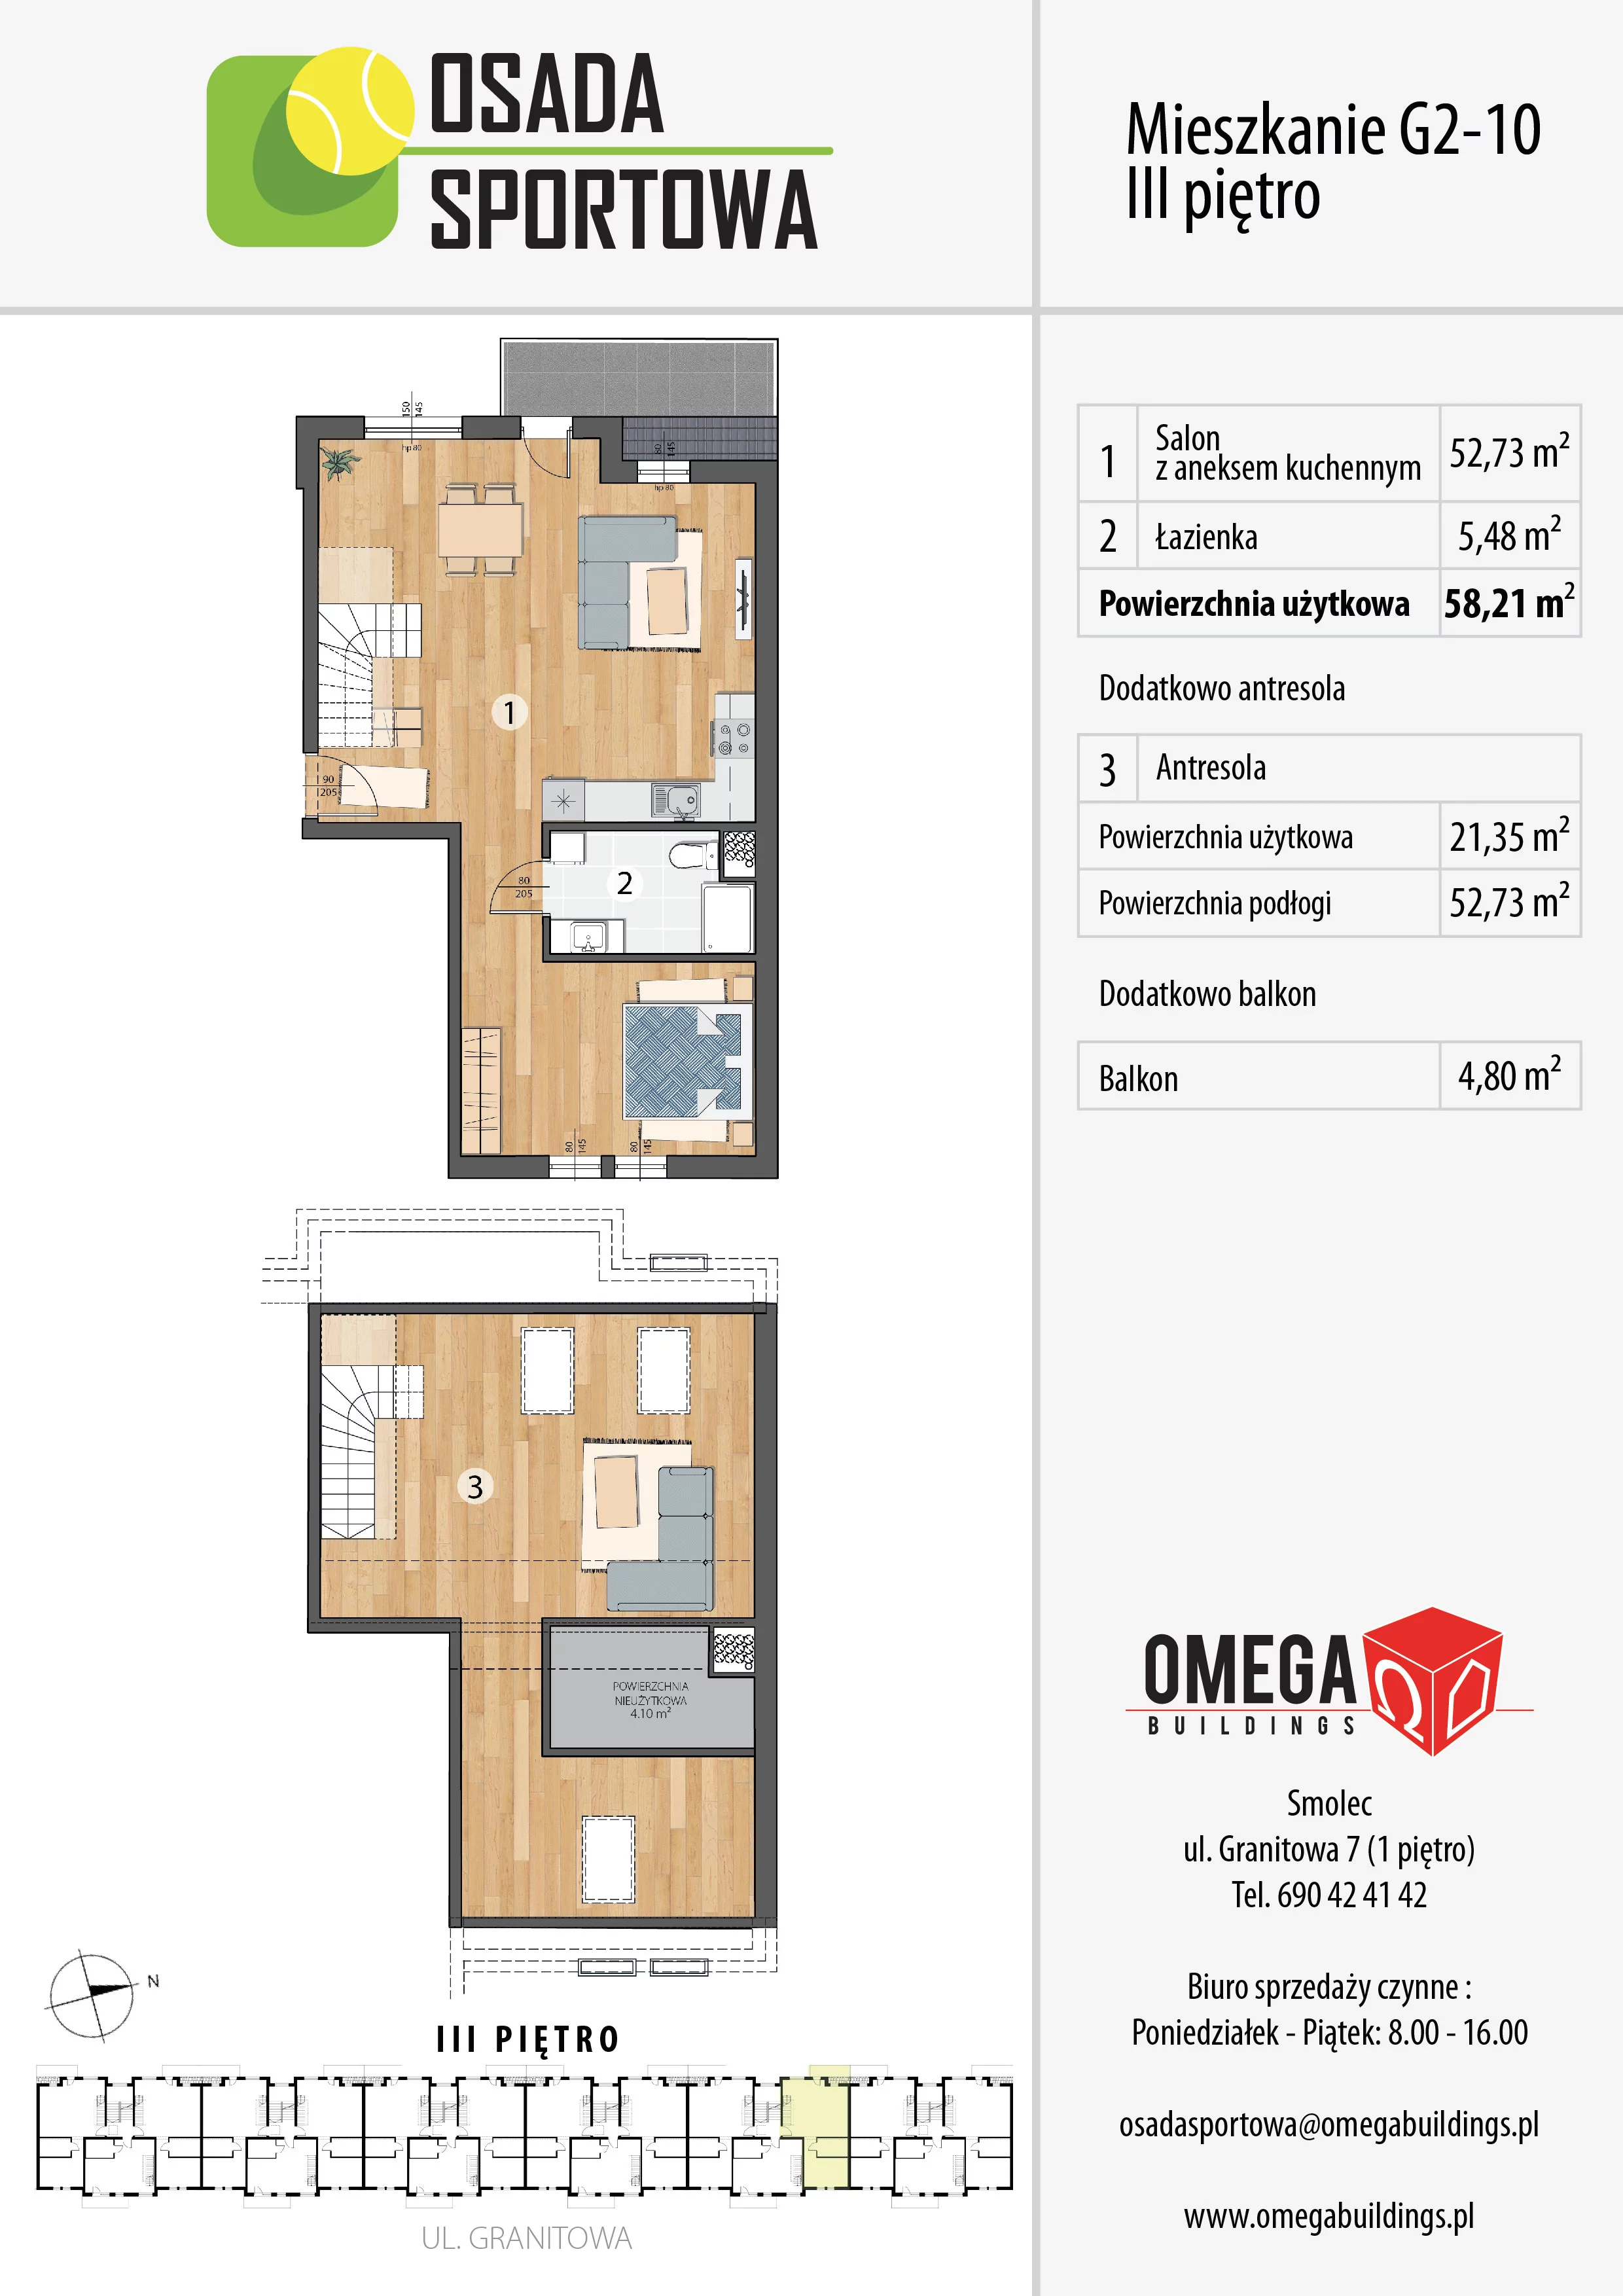 Mieszkanie 79,56 m², piętro 3, oferta nr G2-10, Osada Sportowa Budynek G, Smolec, ul. Granitowa 52-62